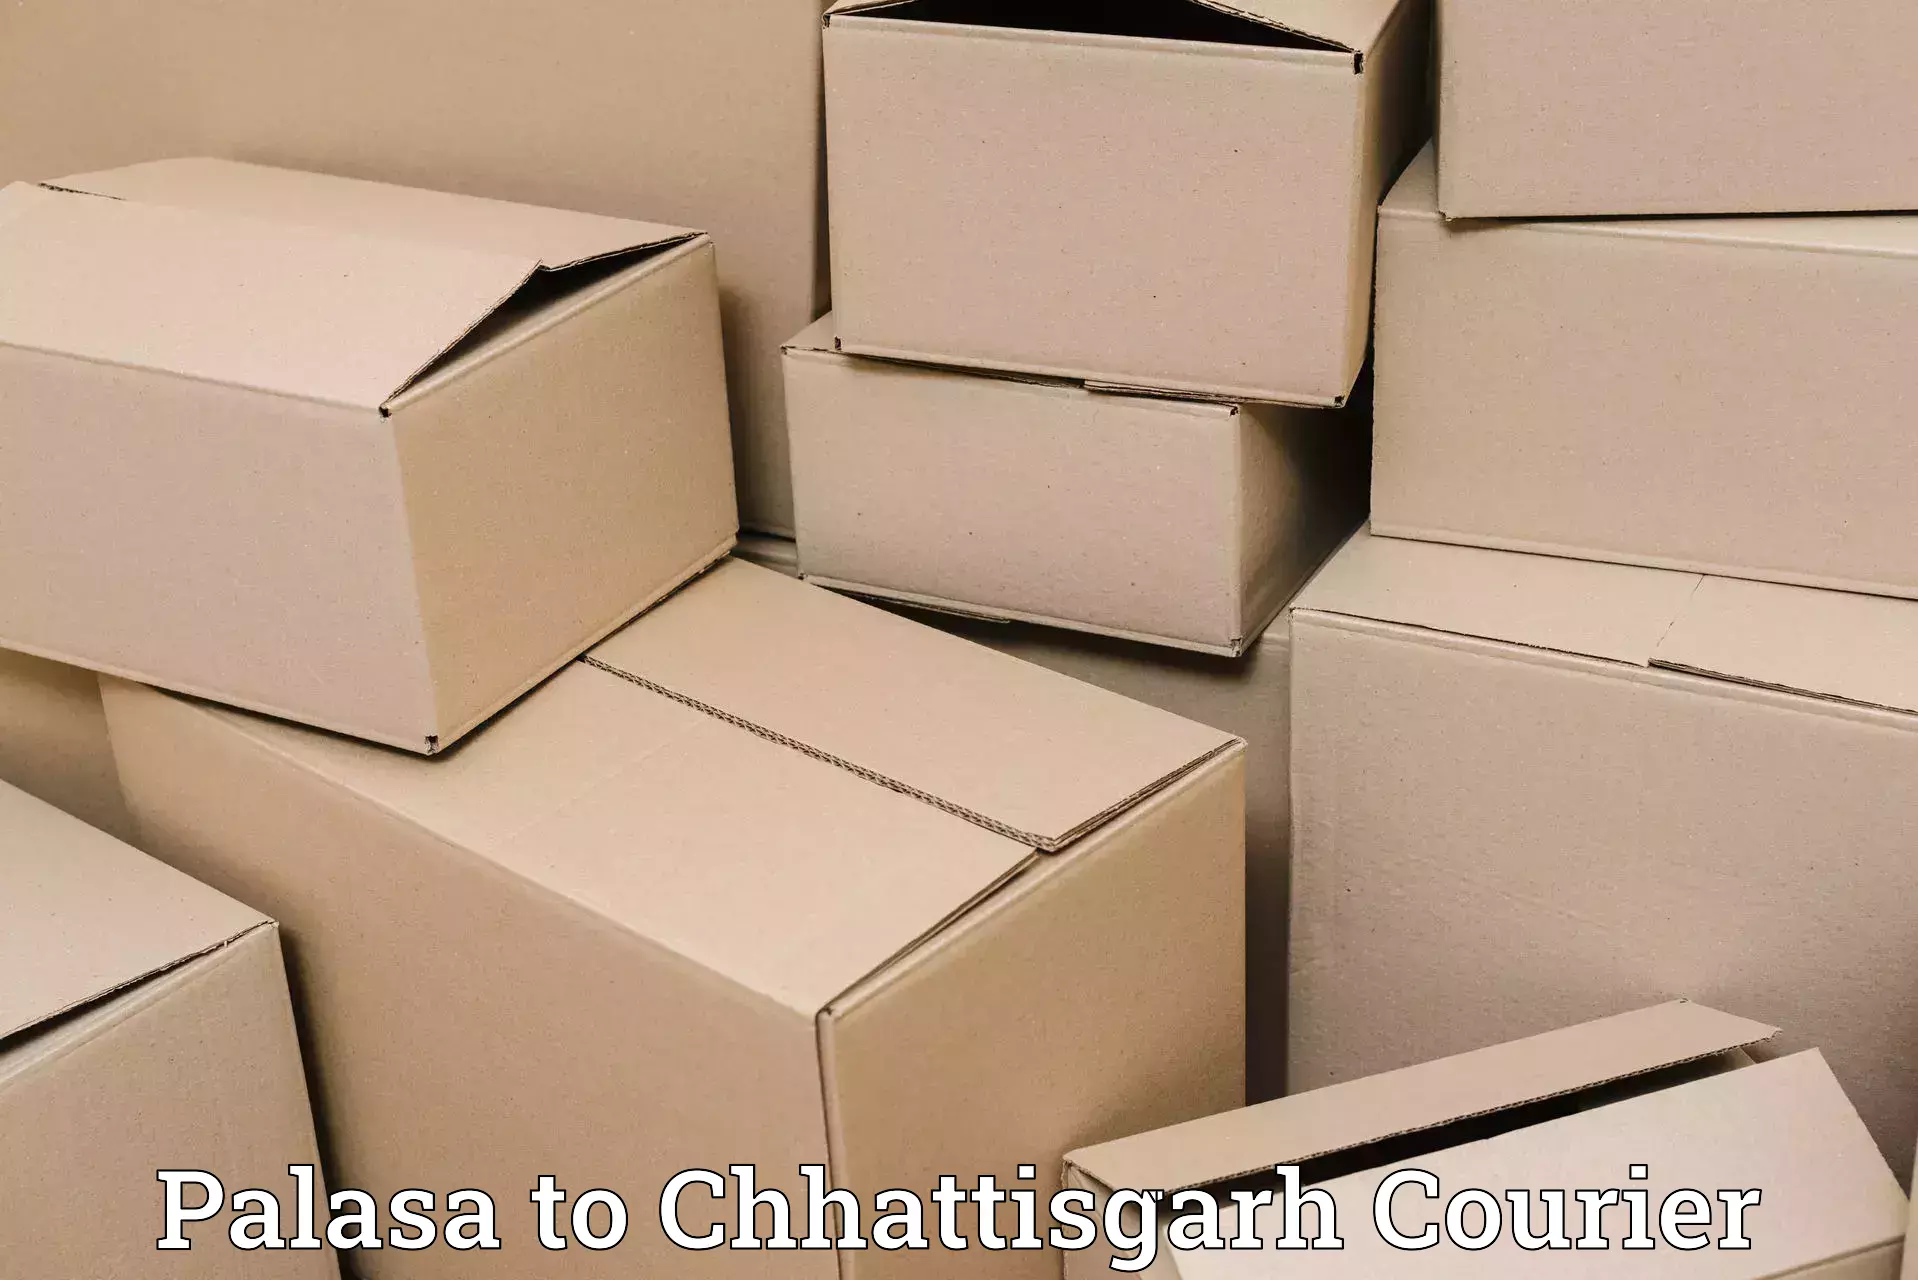 Secure freight services Palasa to Korea Chhattisgarh